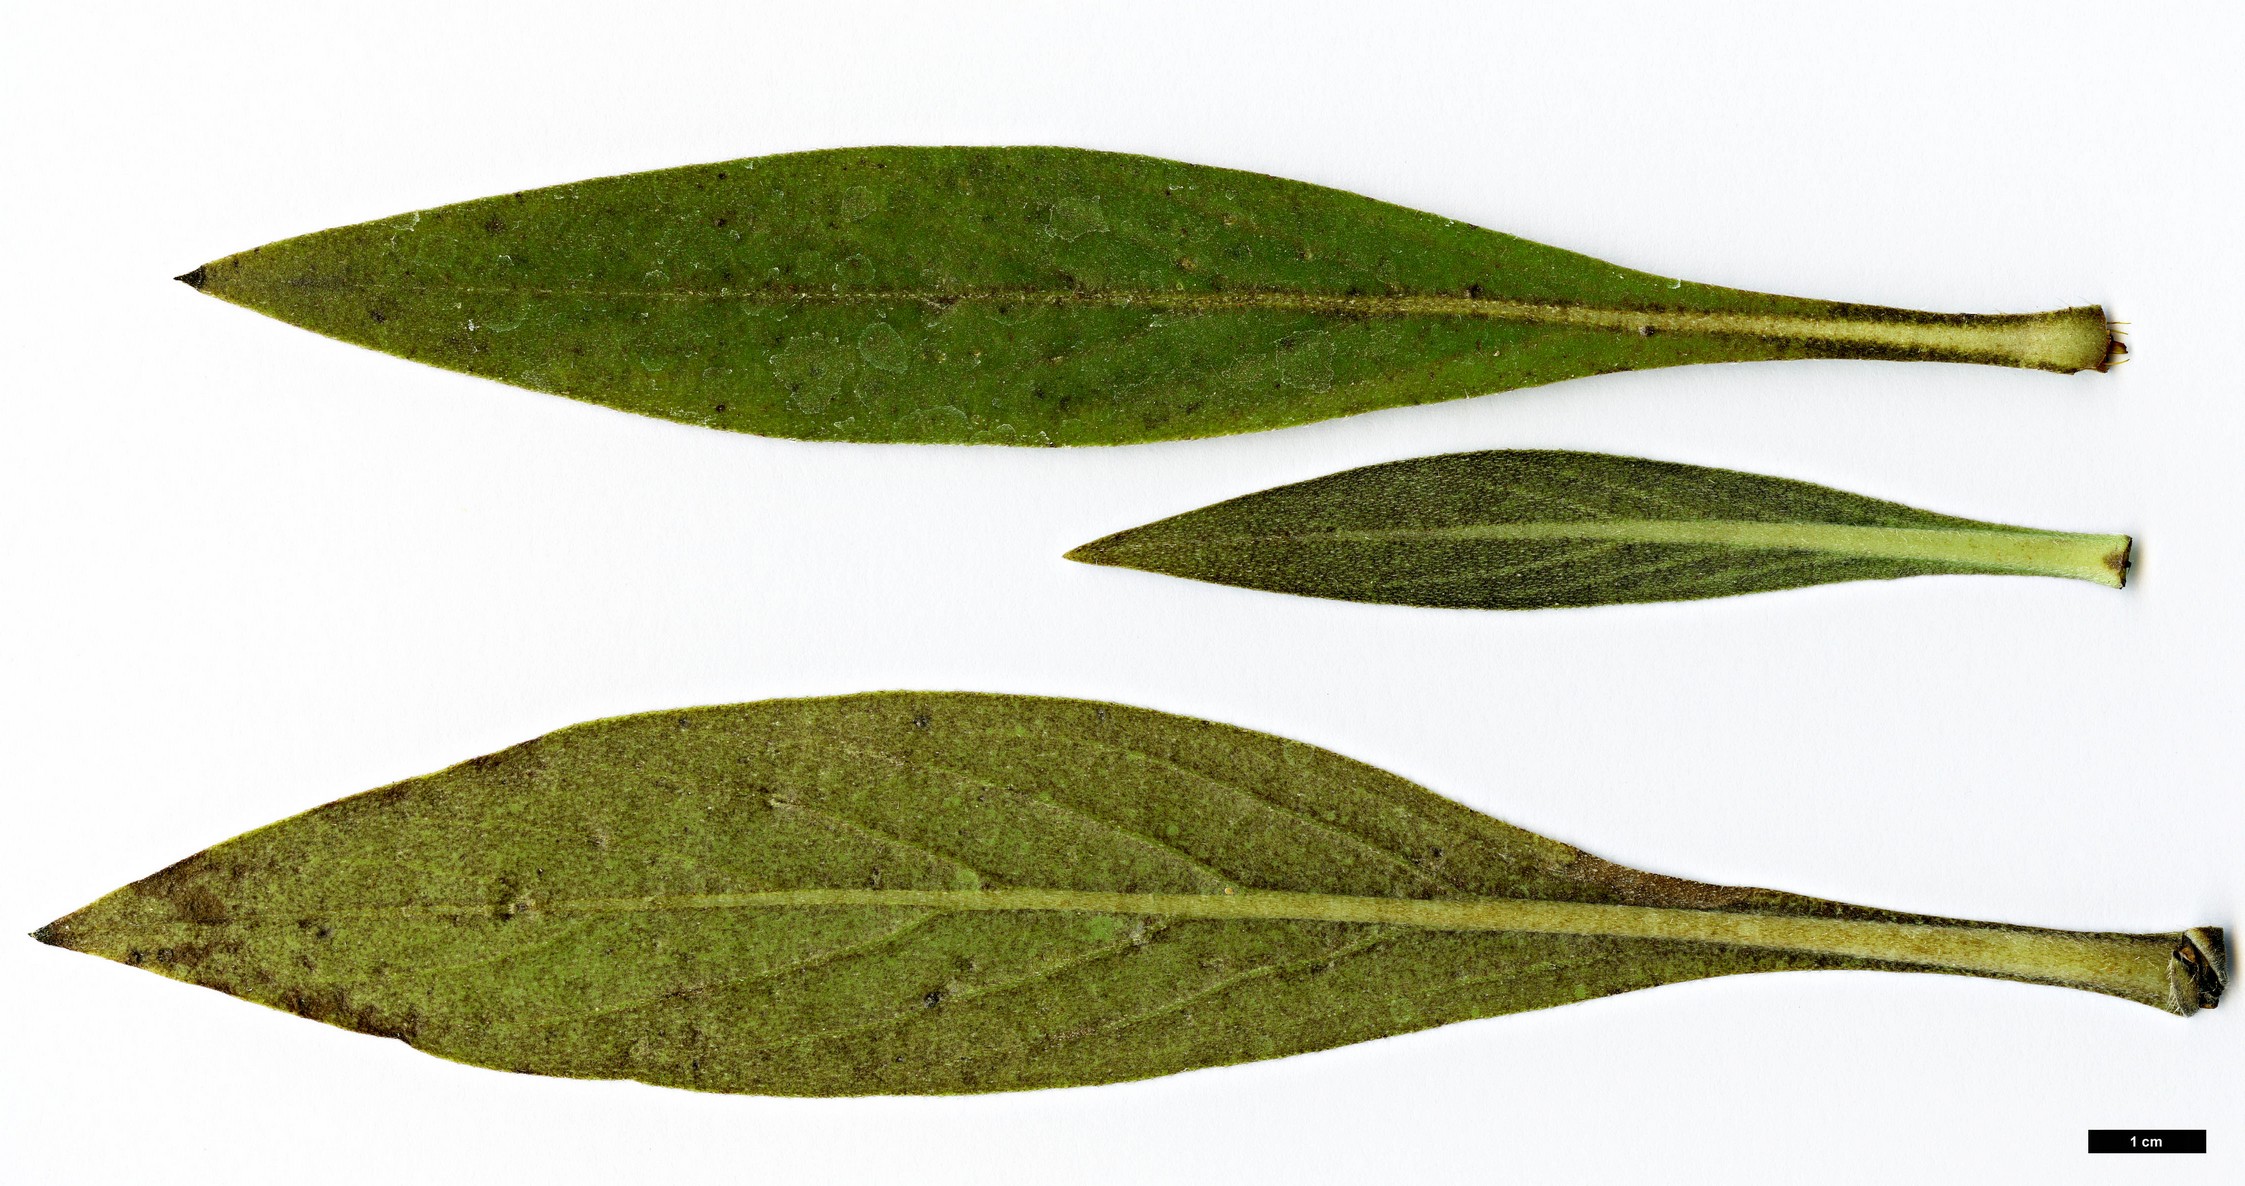 High resolution image: Family: Boraginaceae - Genus: Echium - Taxon: decaisnei